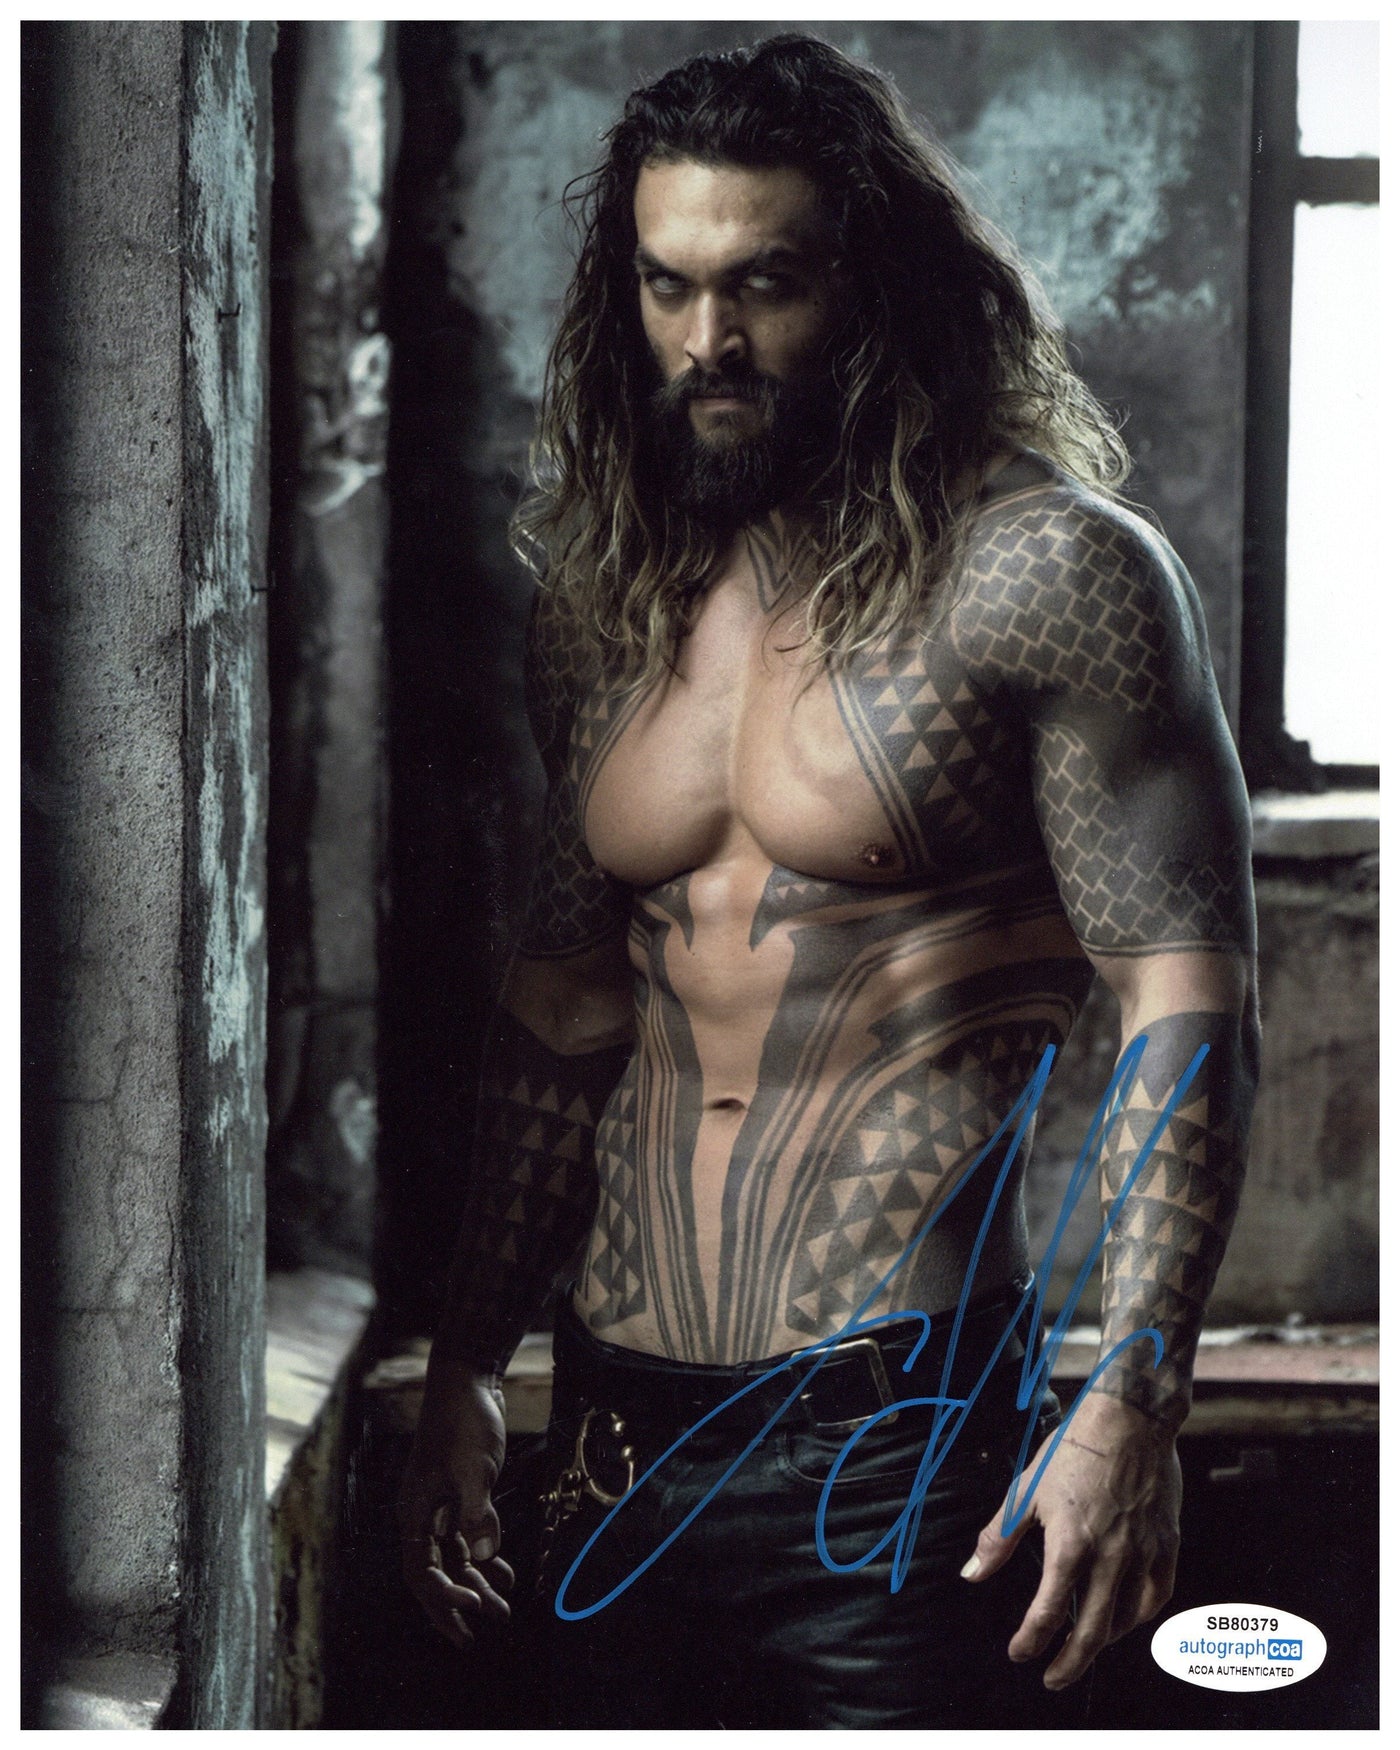 Jason Momoa Signed 8x10 Photo Aquaman Autographed ACOA #1